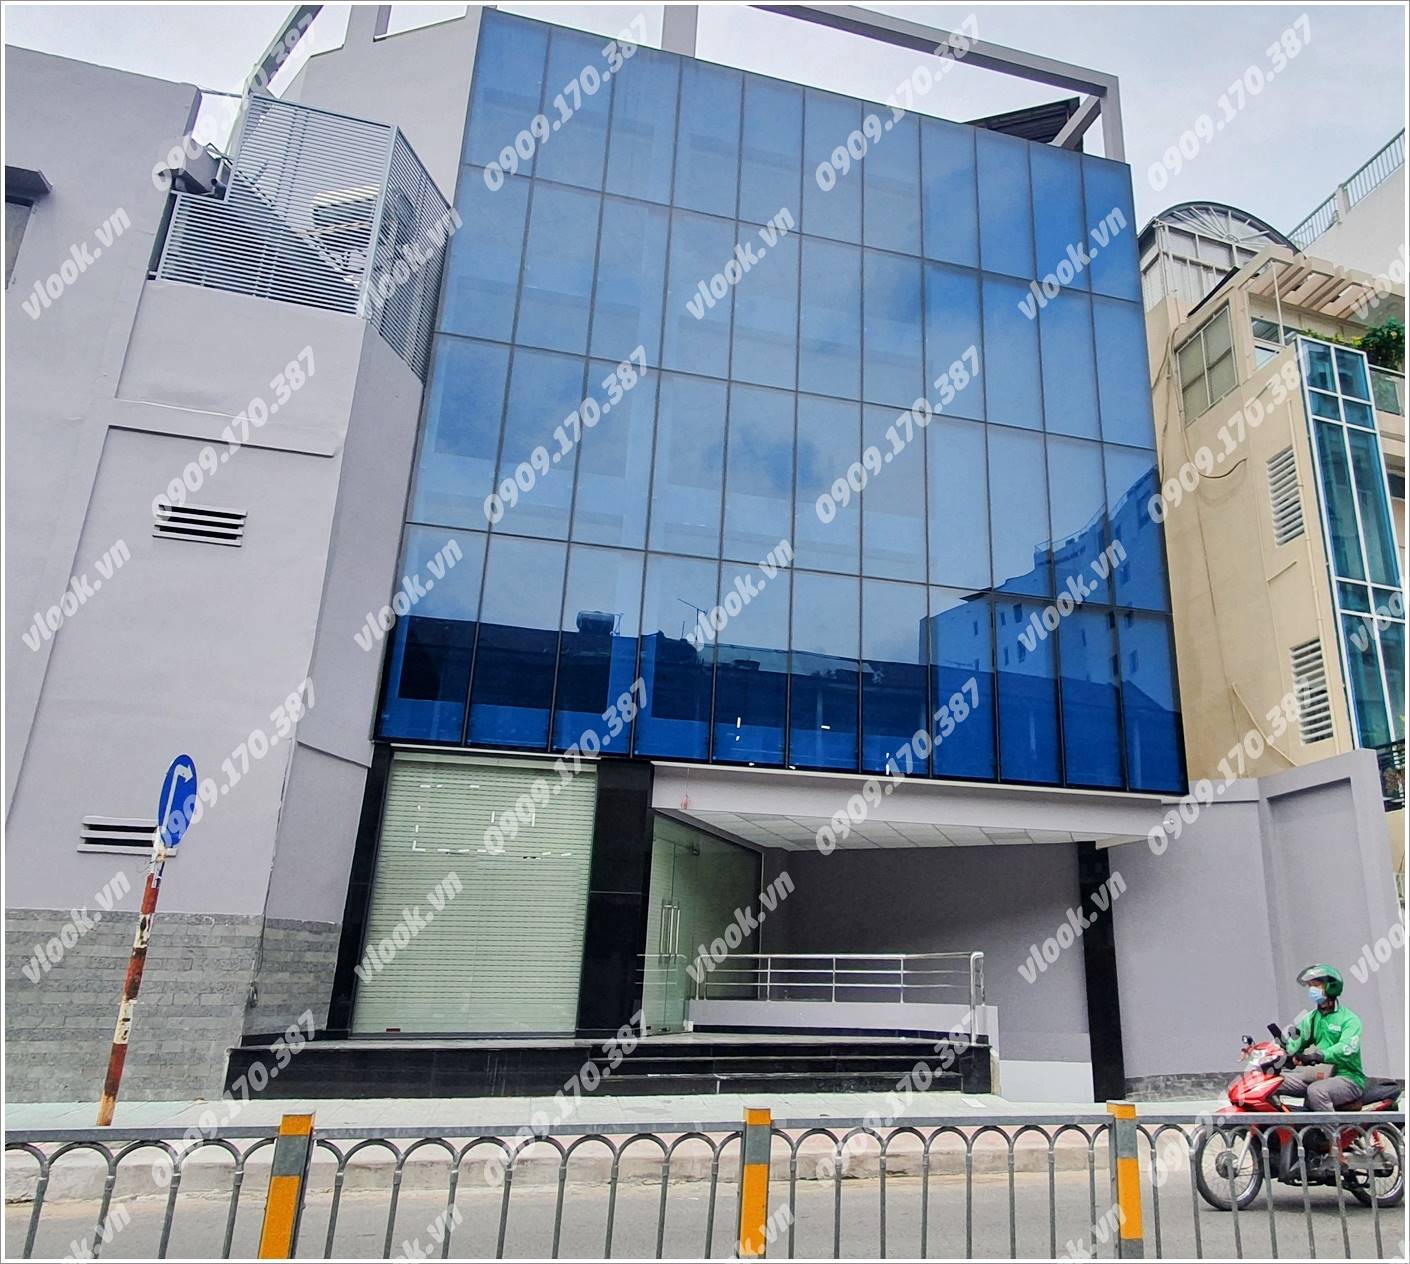 Cao ốc cho thuê văn phòng tòa nhà Nguyễn Văn Giai Building, Quận 1, TPHCM - vlook.vn